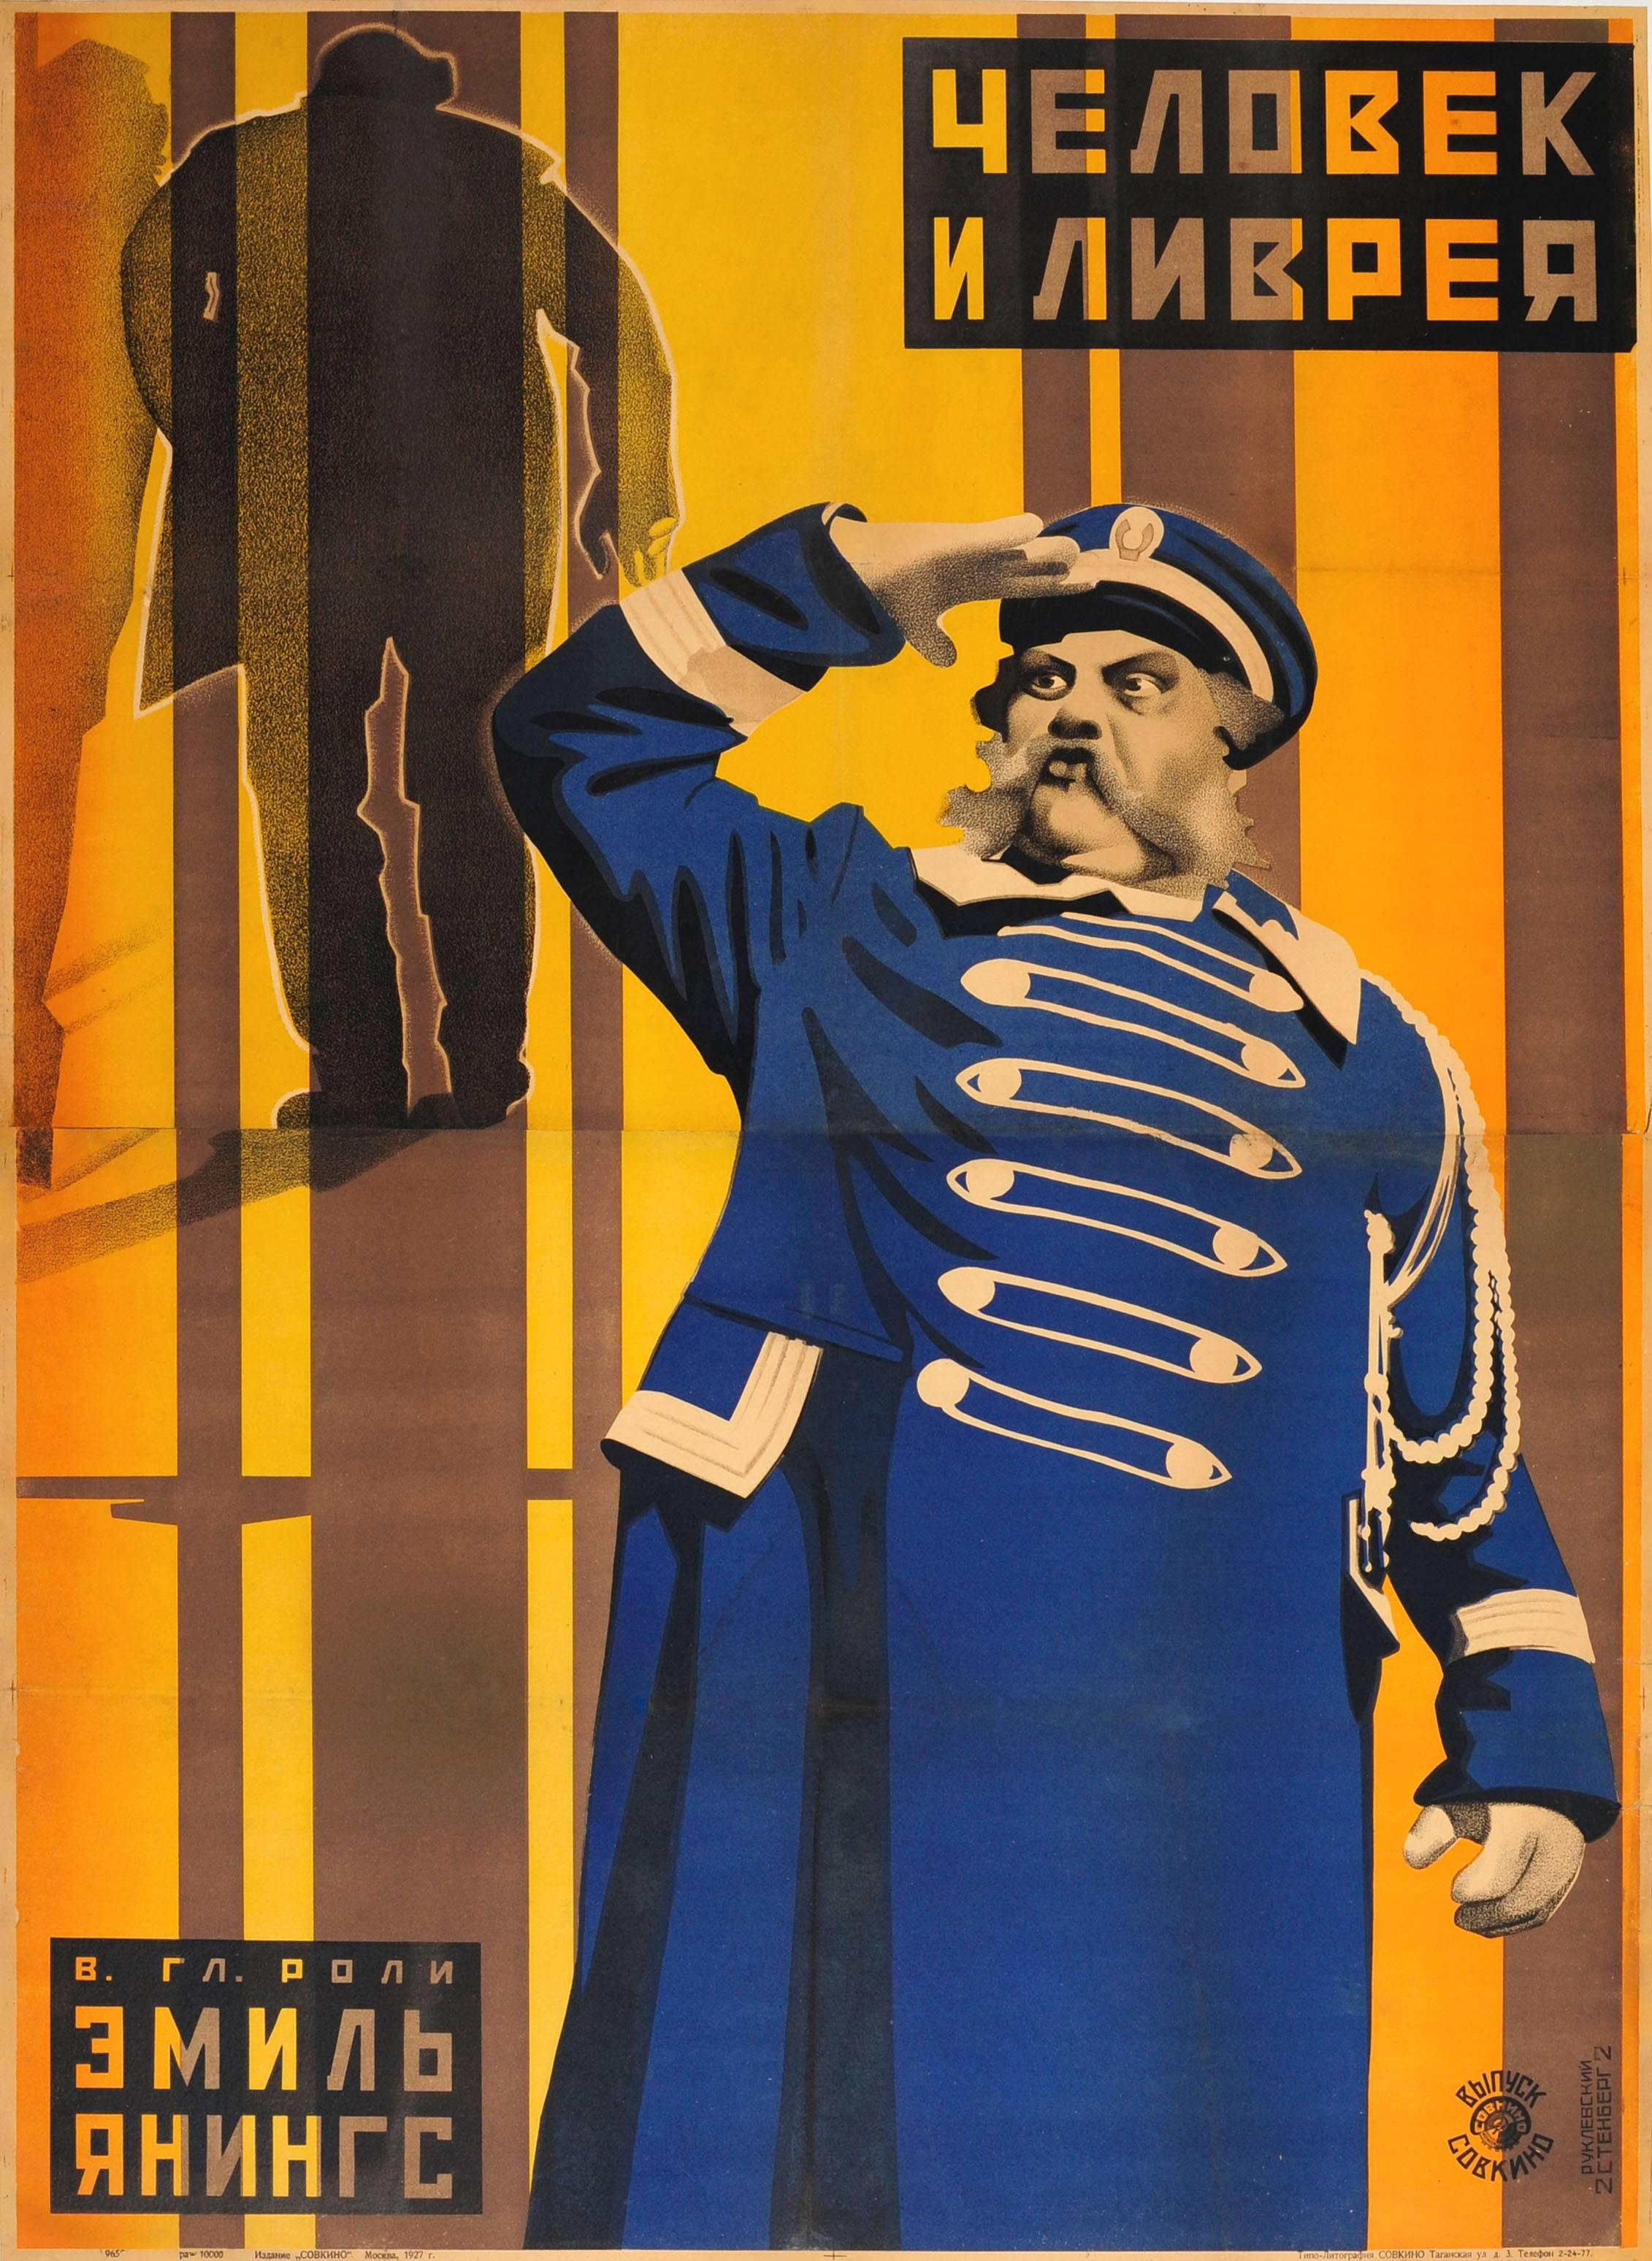 Stenberg Brothers and Yakov Ruklevsky Print - Original 1927 Constructivist Soviet Movie Poster Der Letzte Mann The Last Laugh